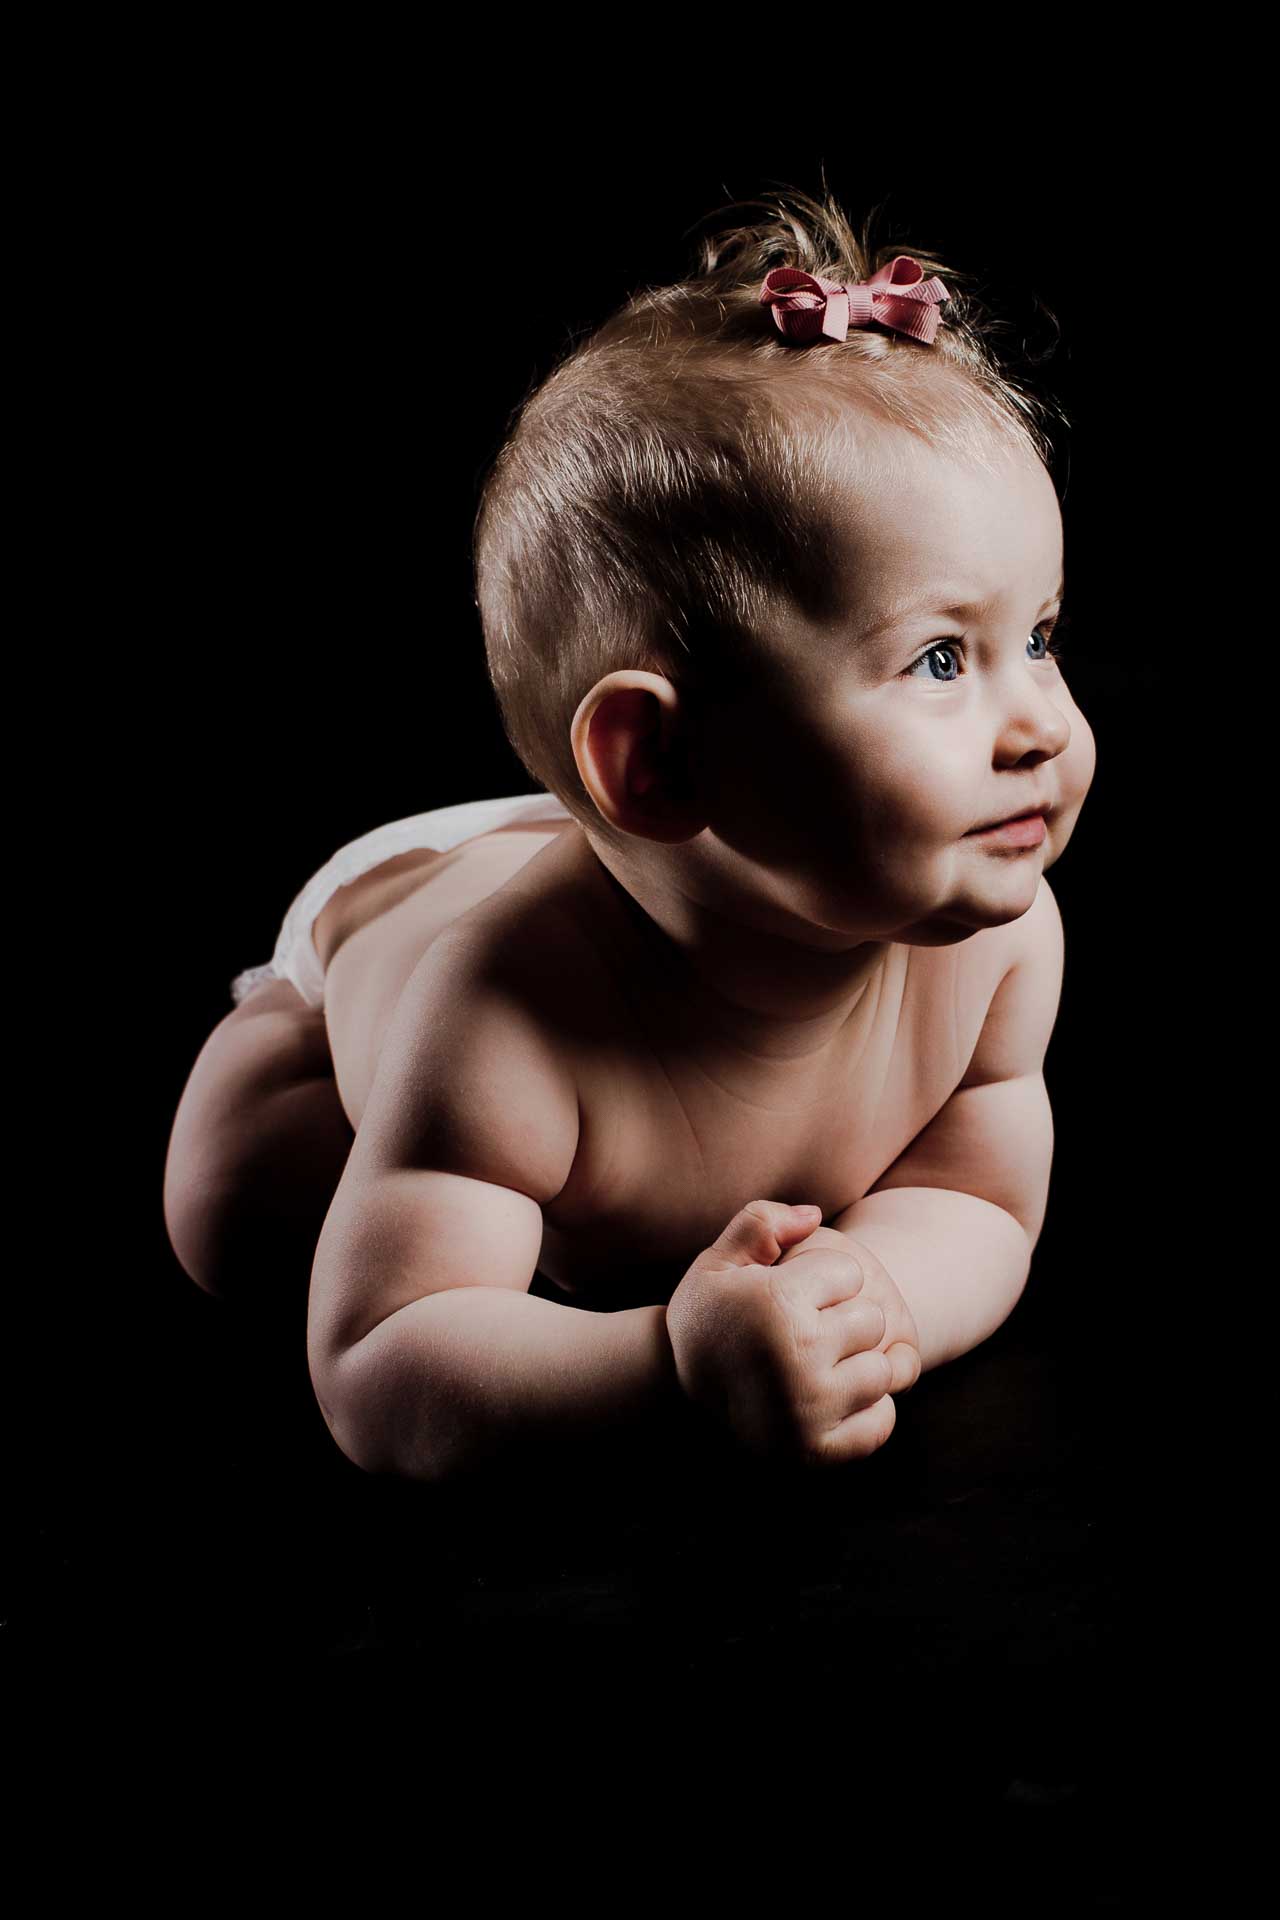 Babyfotografering – Hvad kan du forvente?